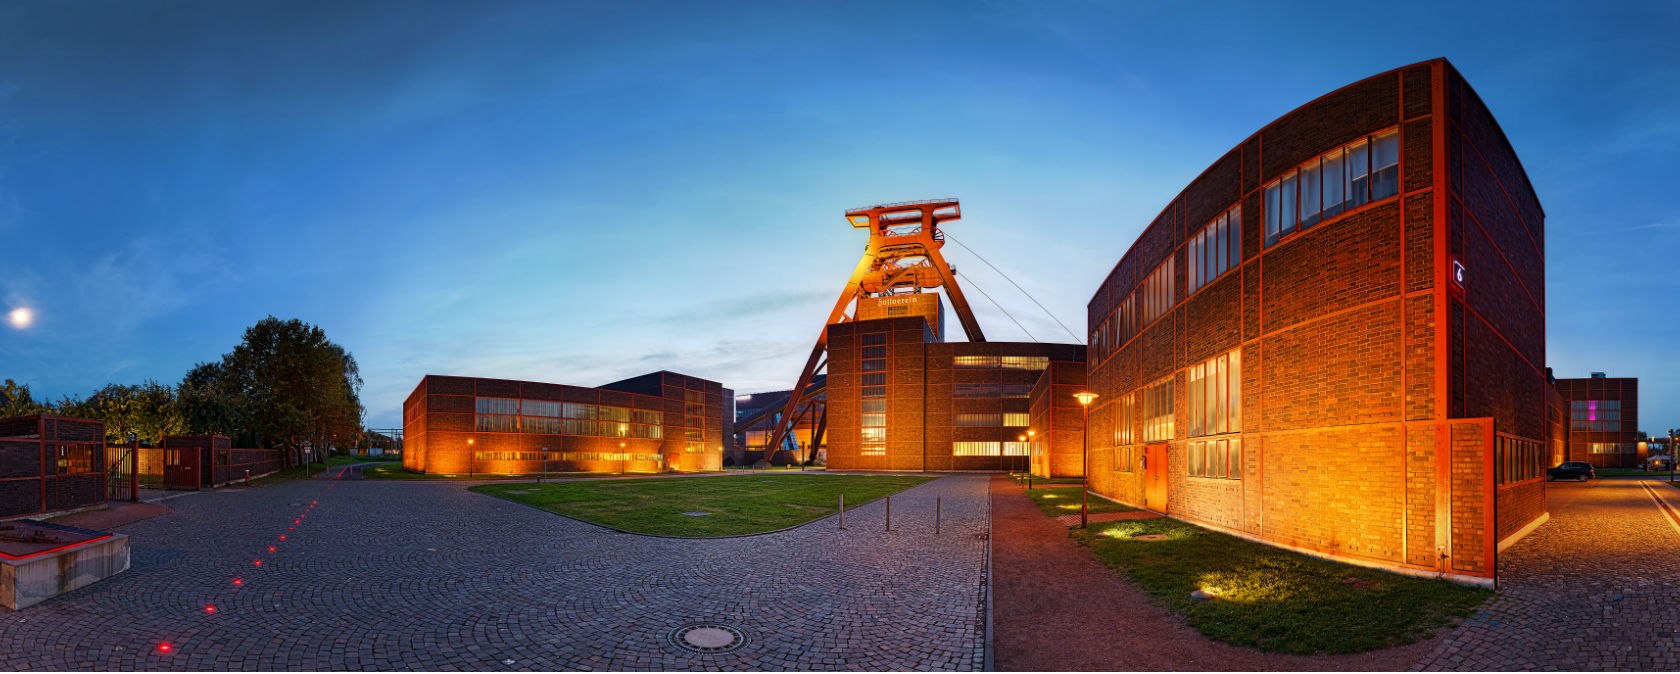 Zeche Zollverein Panorama, © Tourismus NRW e.V.